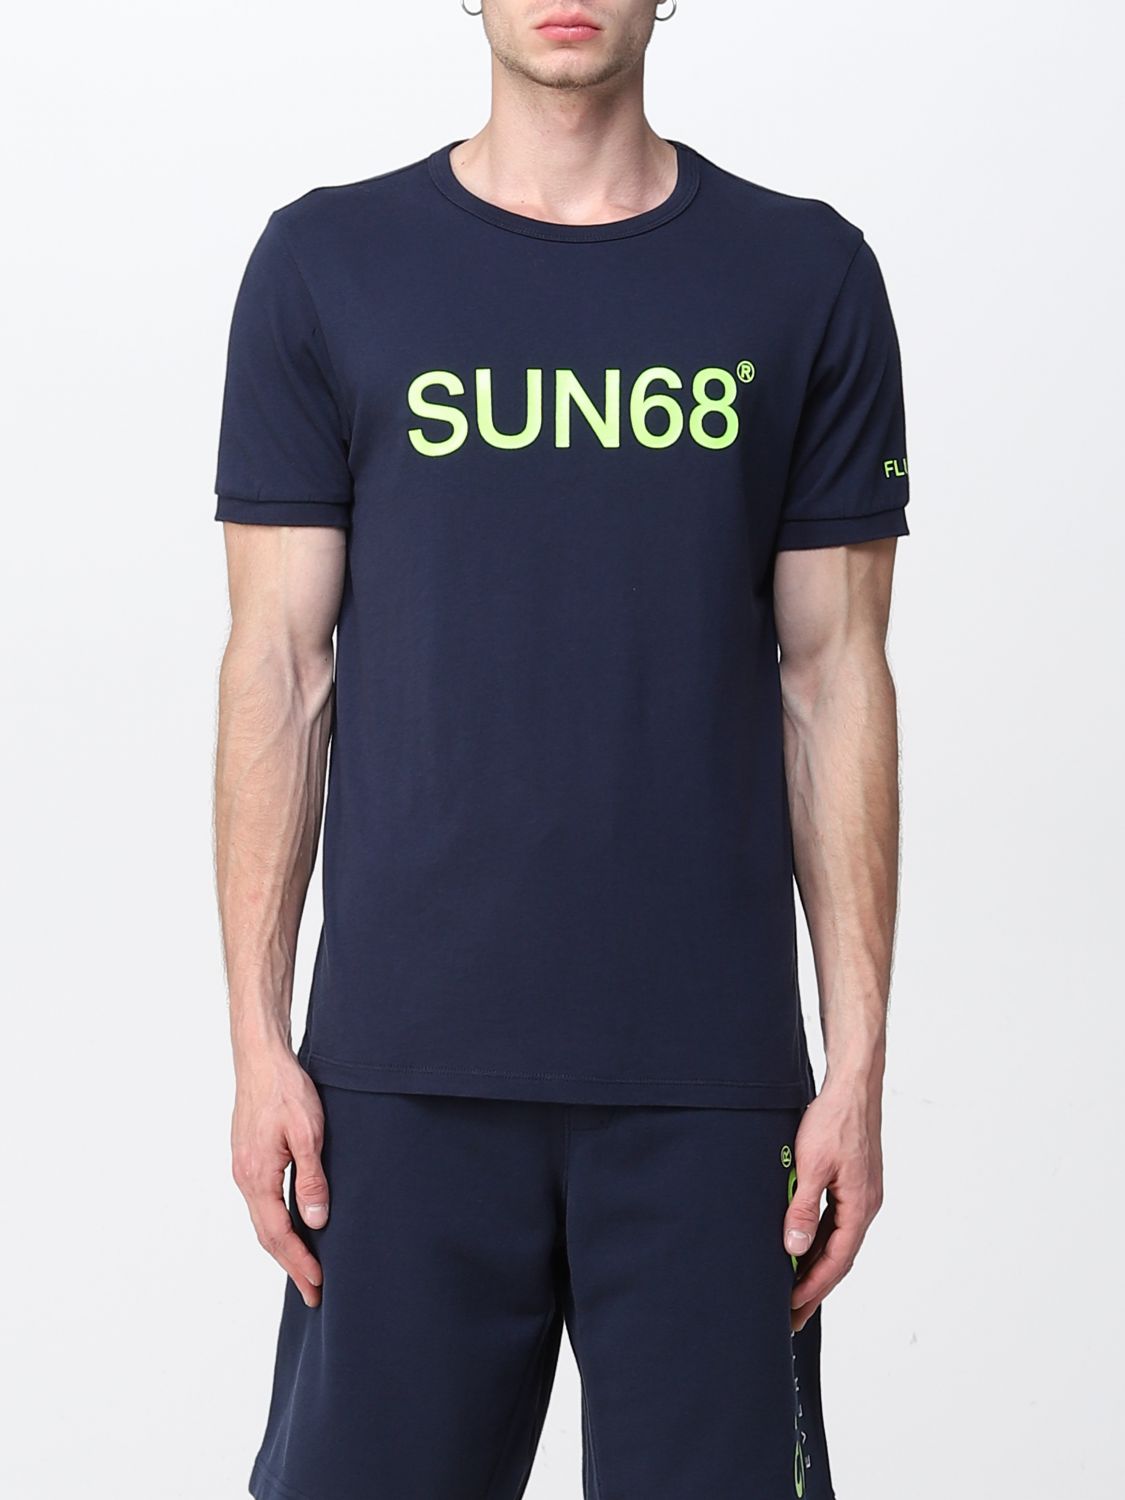 T-shirt Sun 68: Sun 68 t-shirt for men blue 1